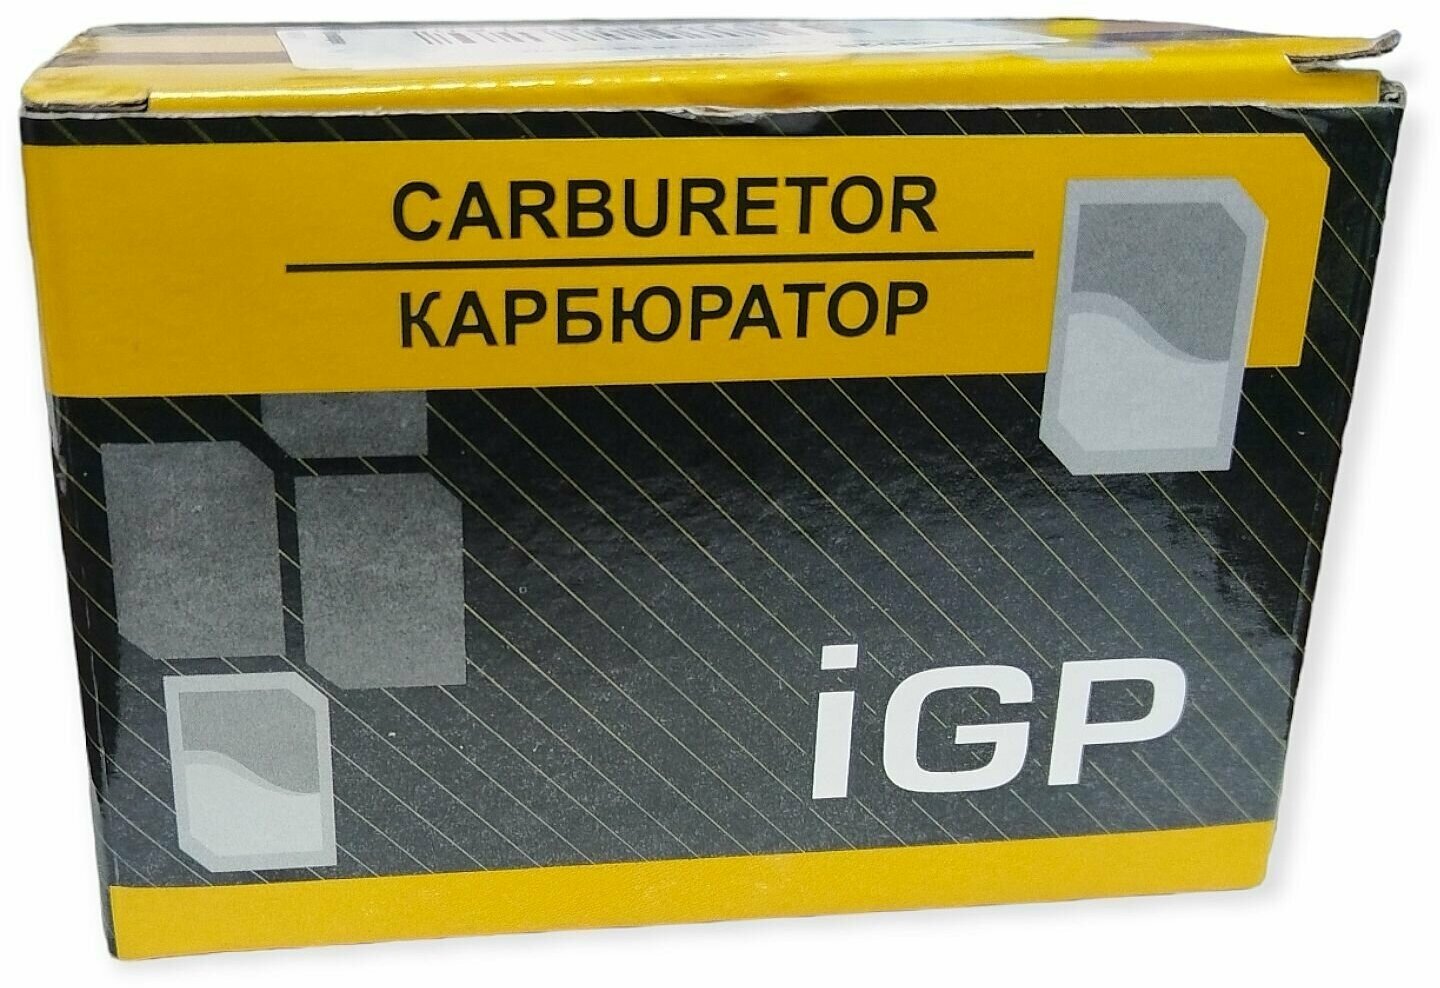 Карбюратор для мотокос 26,33 куб. см, IGP